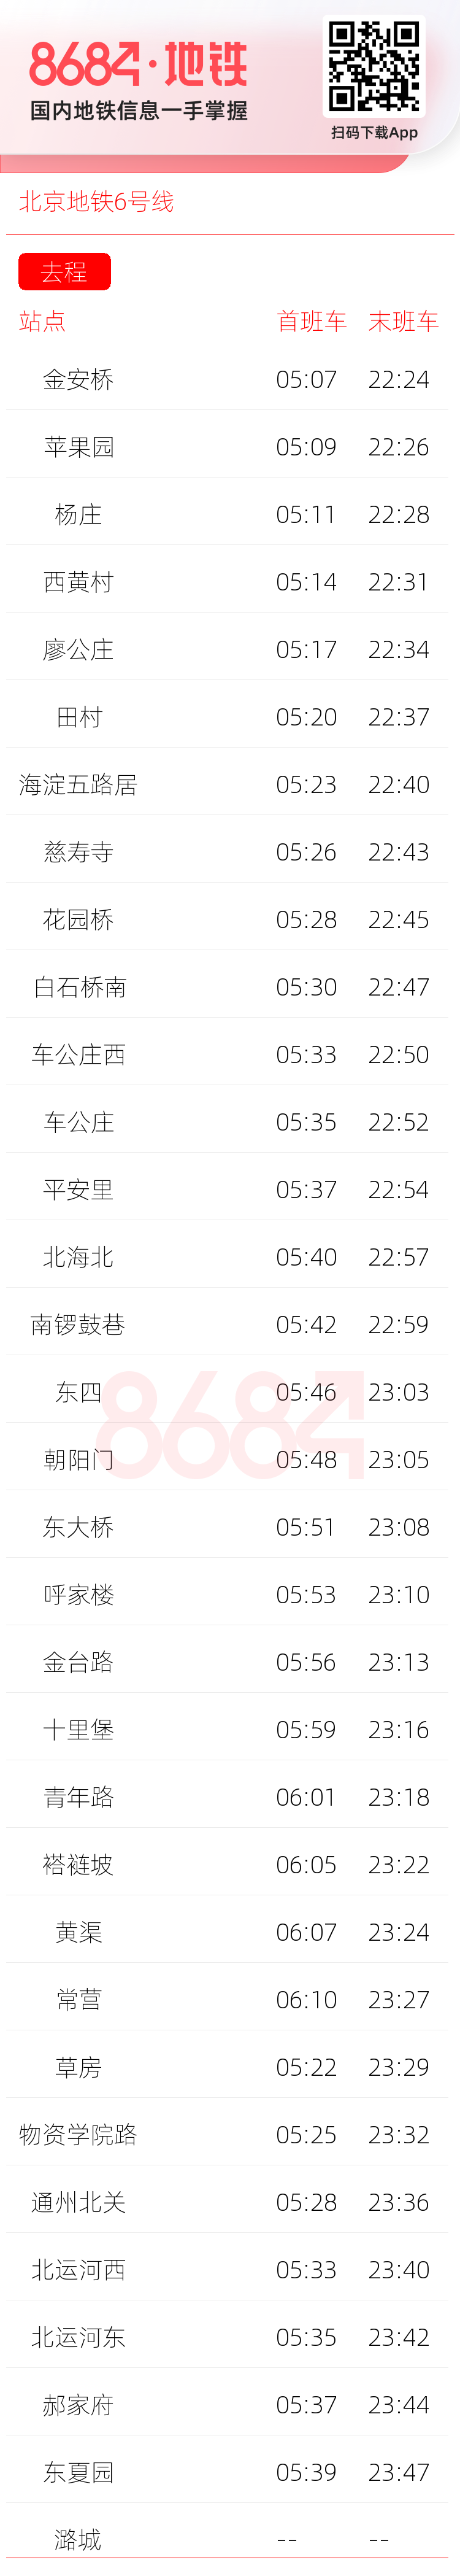 北京地铁6号线运营时间表